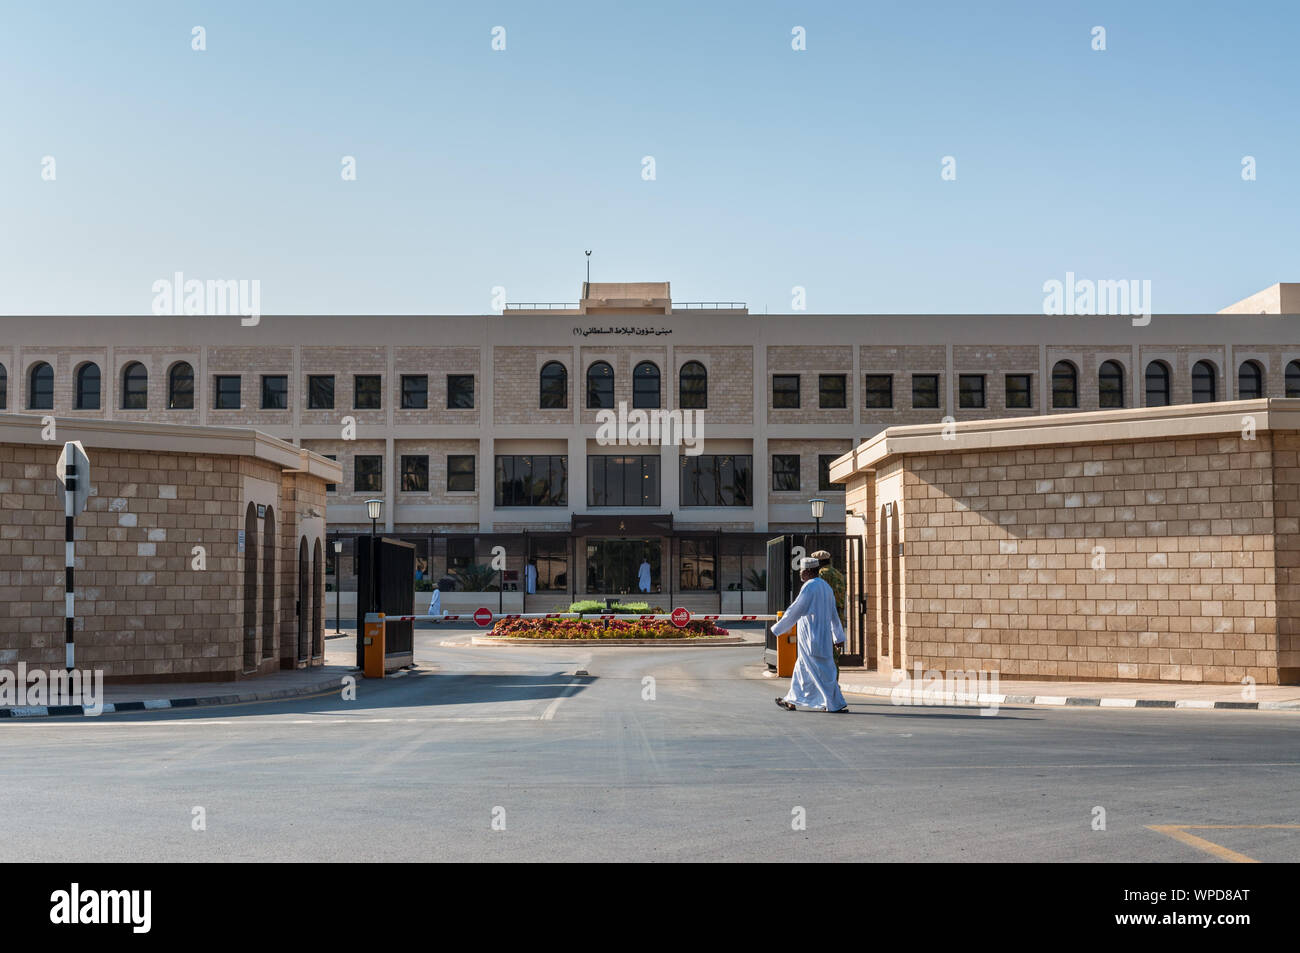 Mascate, Sultanat d'Oman - 12 novembre 2017 : la porte d'Al Hosn palais du Sultan (Sultan Qaboos bin Said Al-Husn Palace) à Salalah Dhofar, Pr Banque D'Images